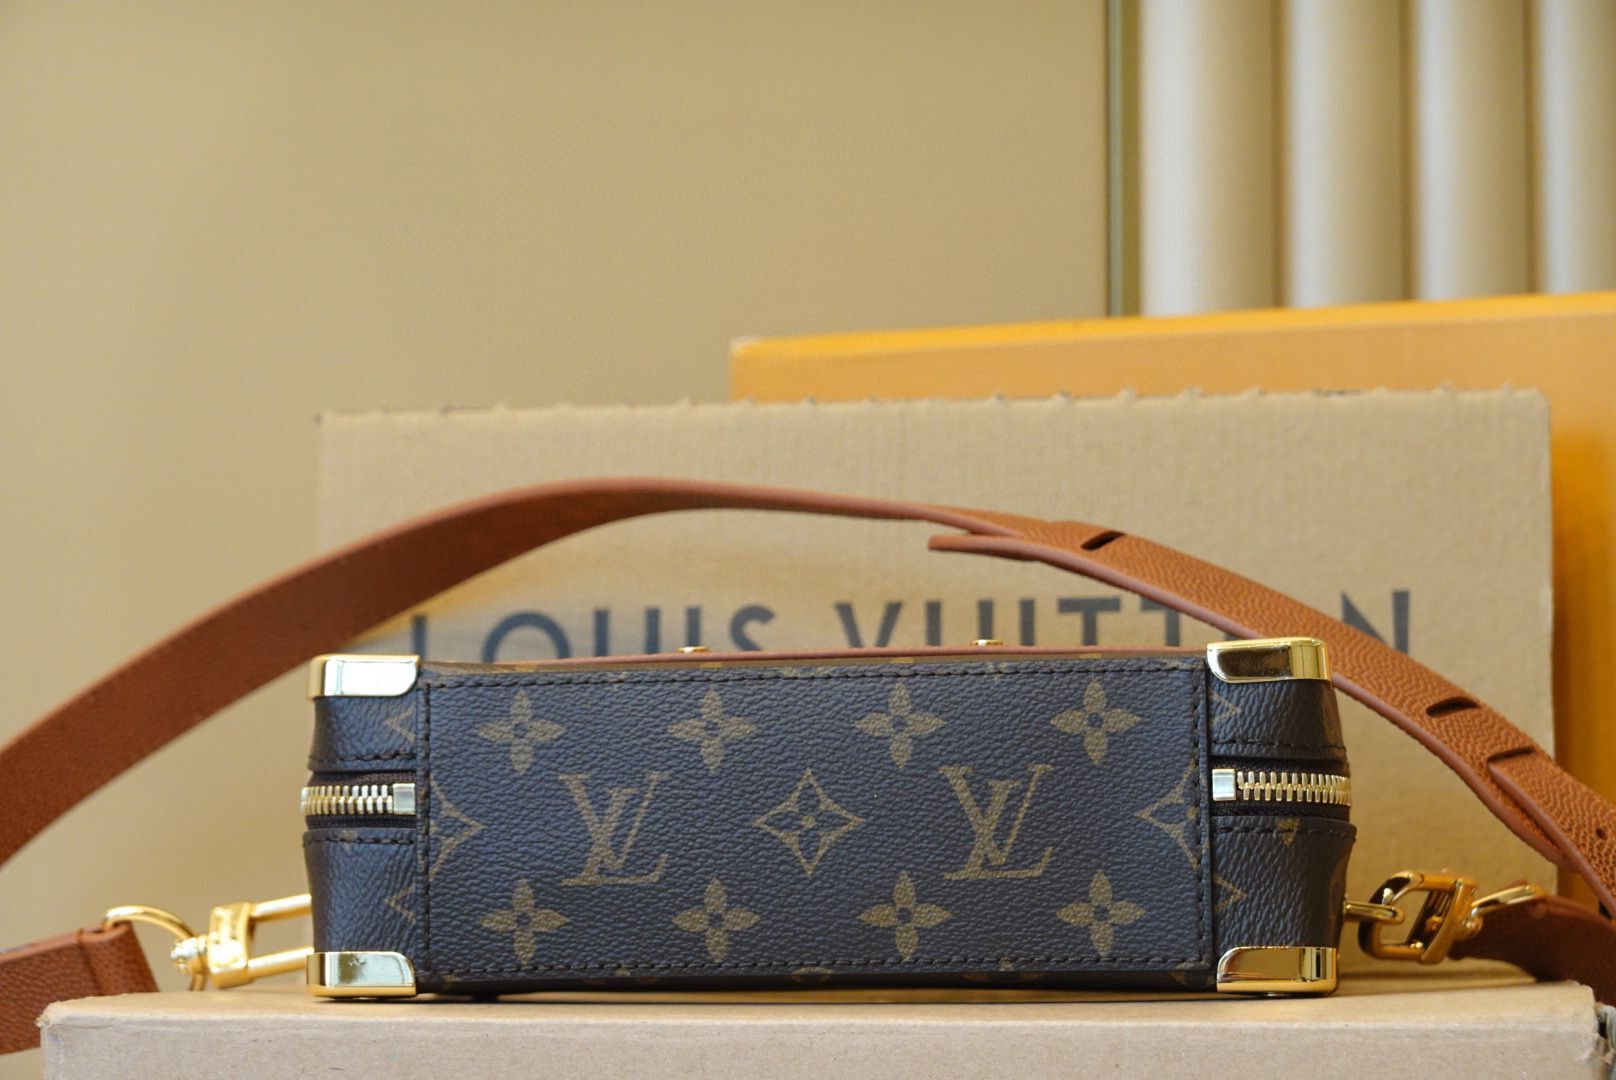 Louis Vuitton Monogram Canvas Handle Trunk Original Leather Bag M45785 Brown